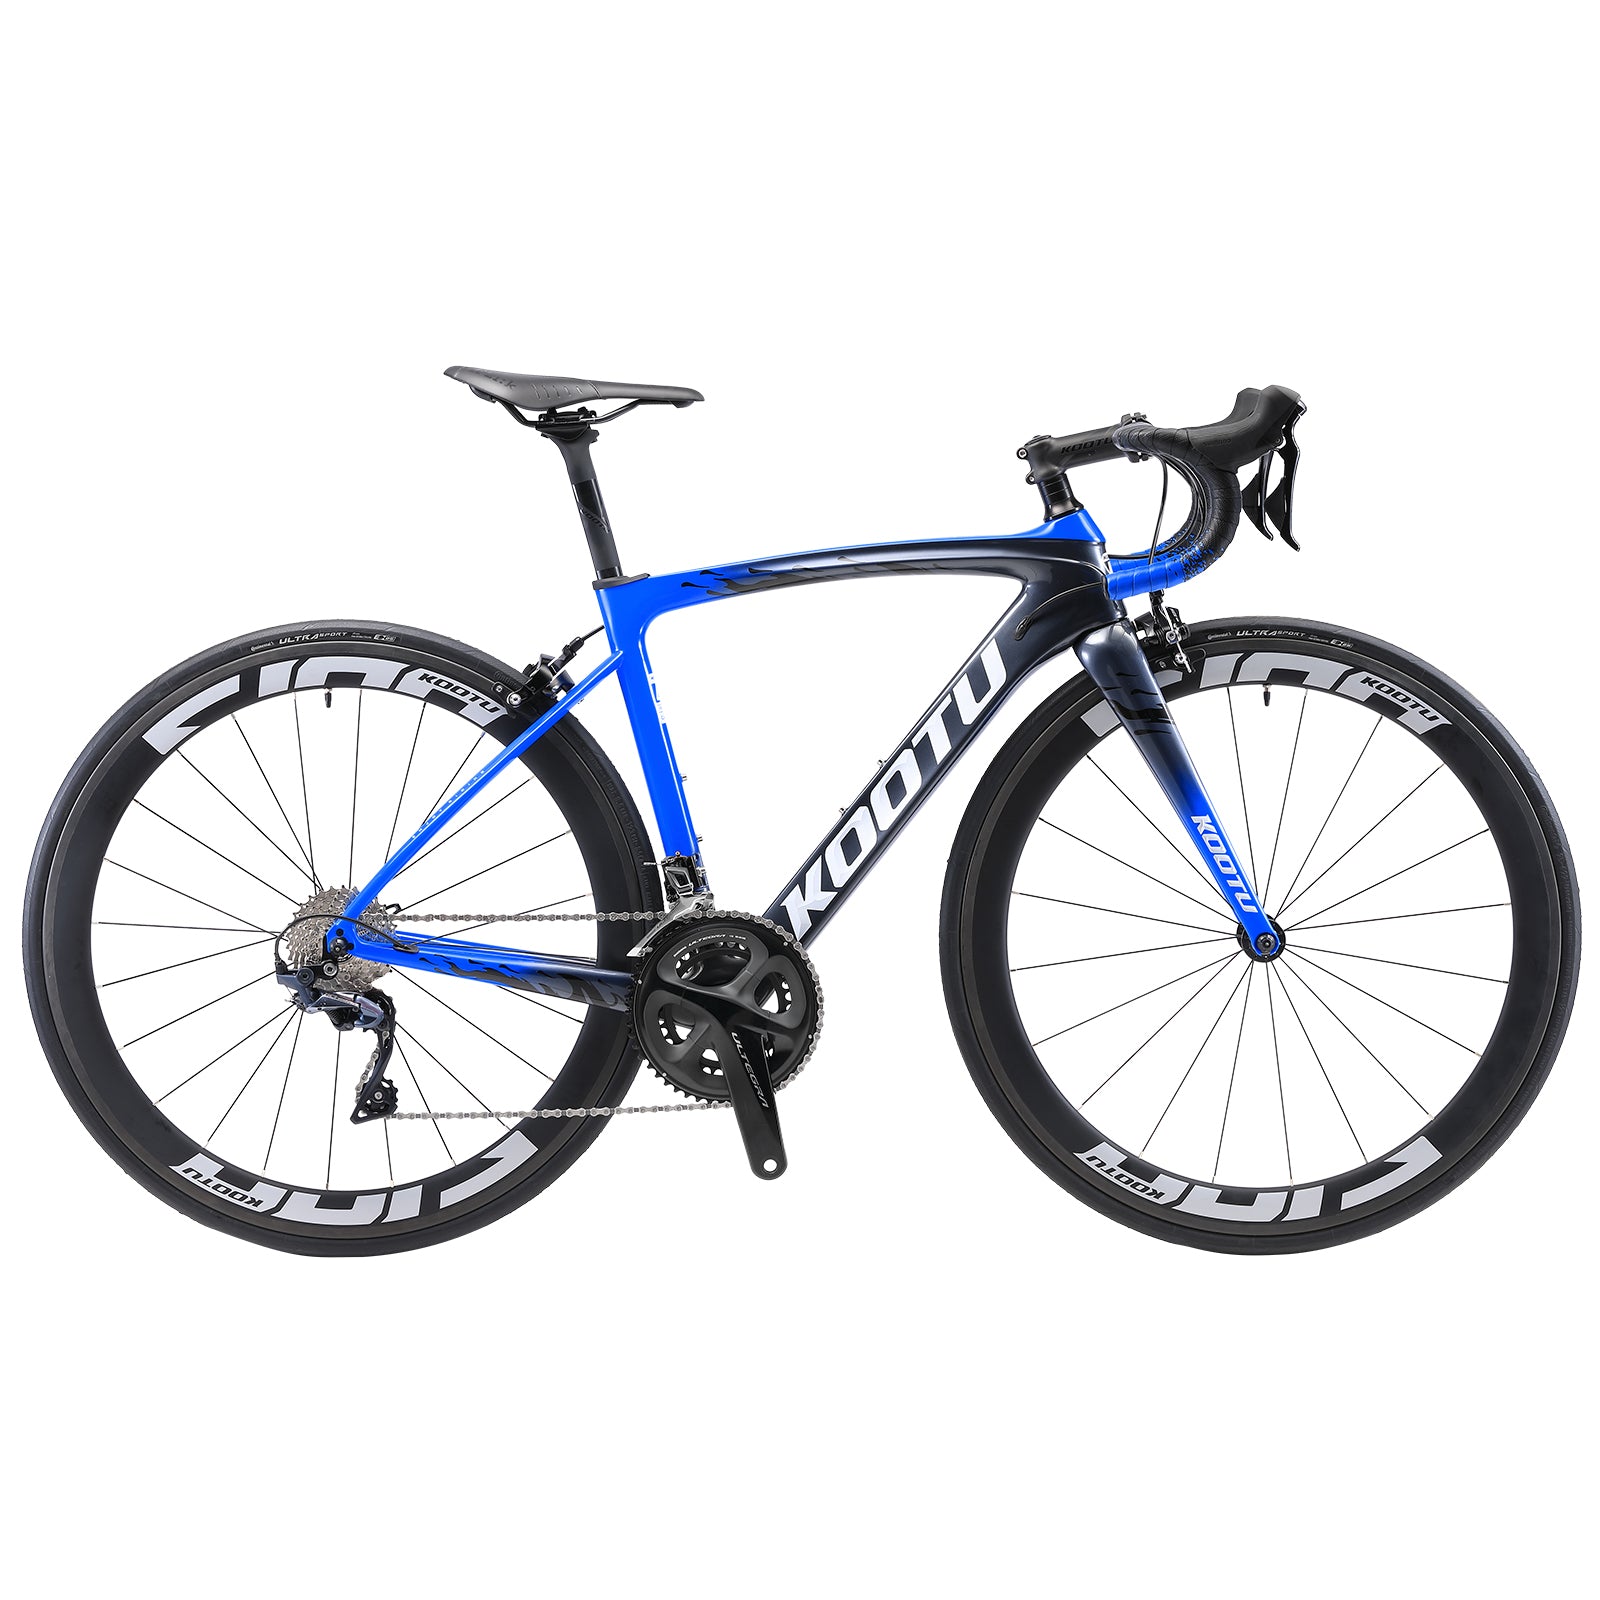 KOOTU R03 Full Carbon Road Bike R8000 22 Speed-Grey Blue